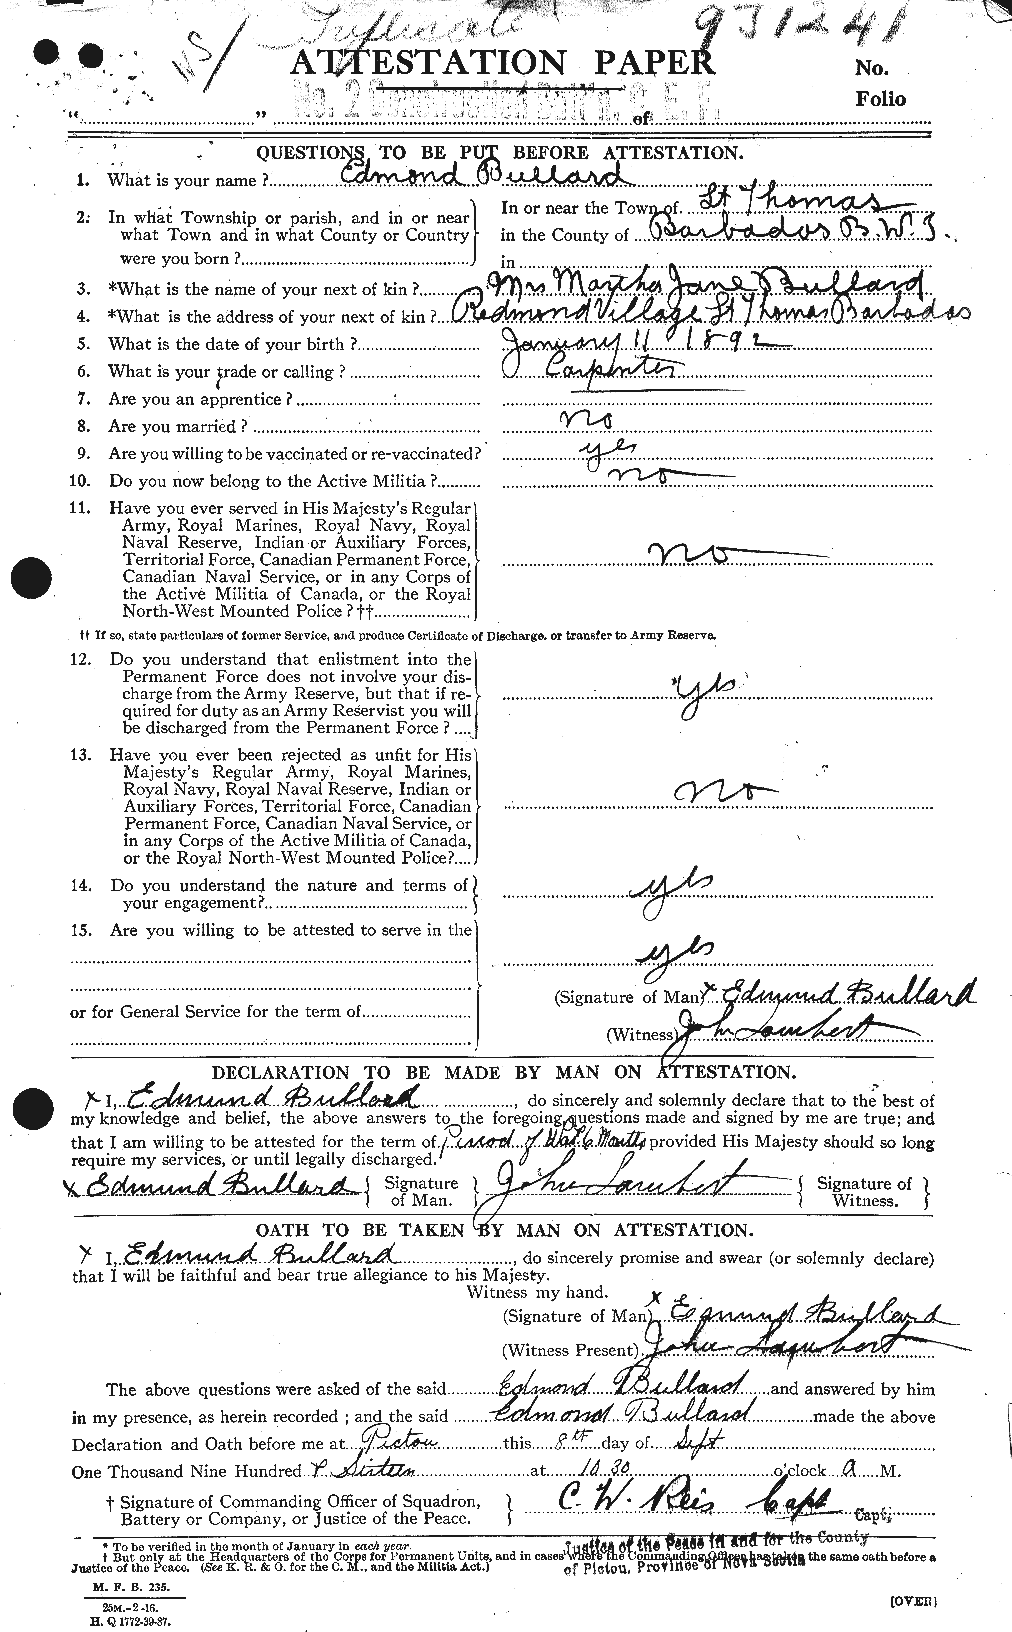 Dossiers du Personnel de la Première Guerre mondiale - CEC 273466a